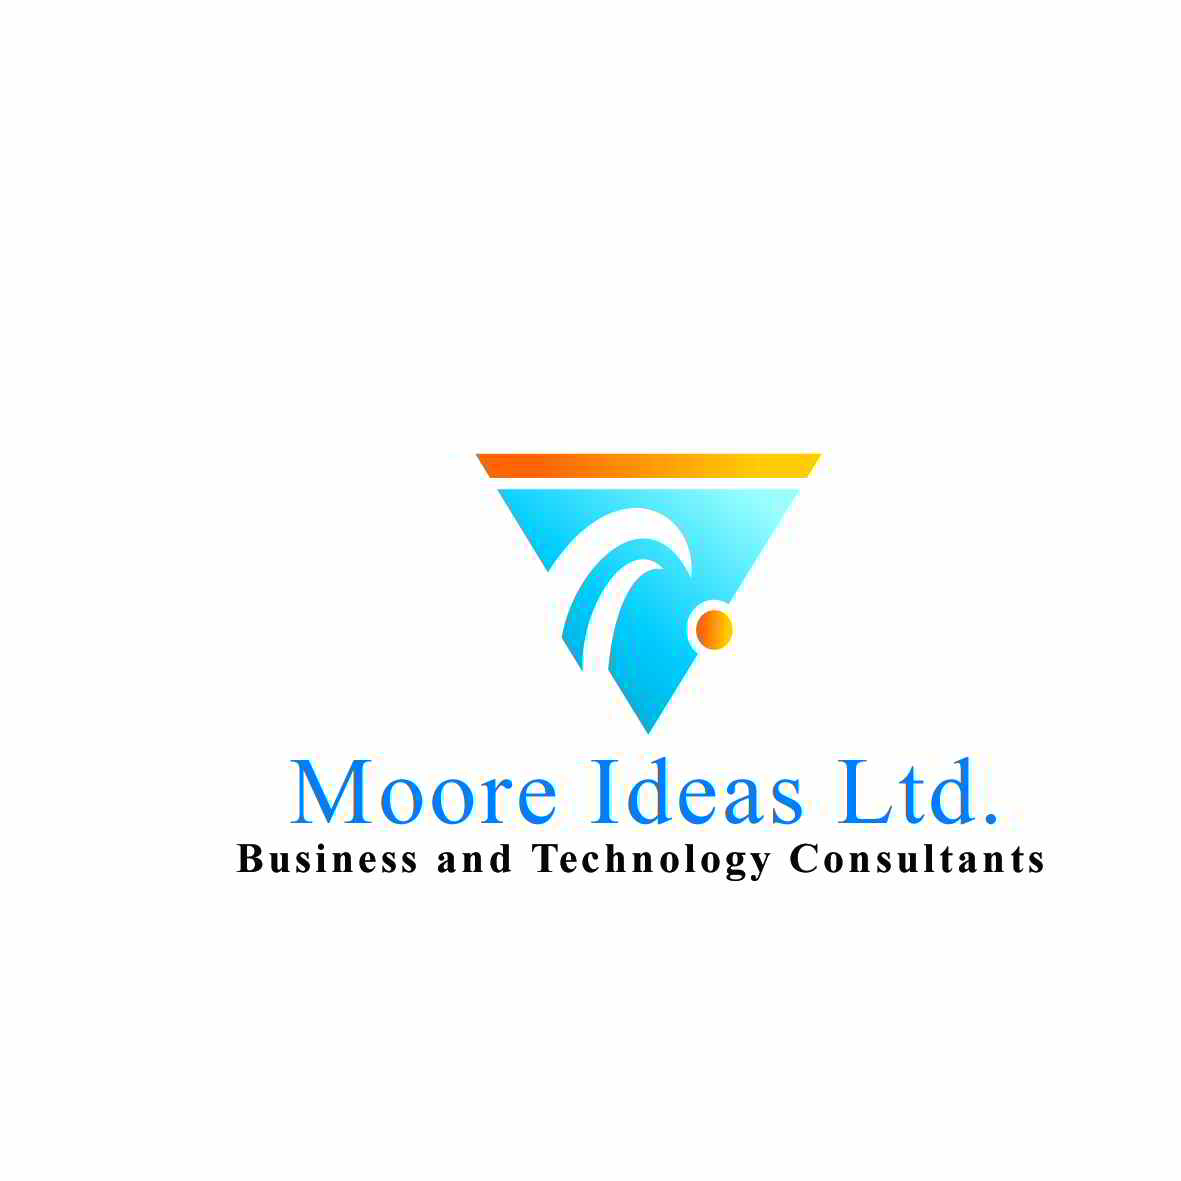 Moore Ideas Ltd